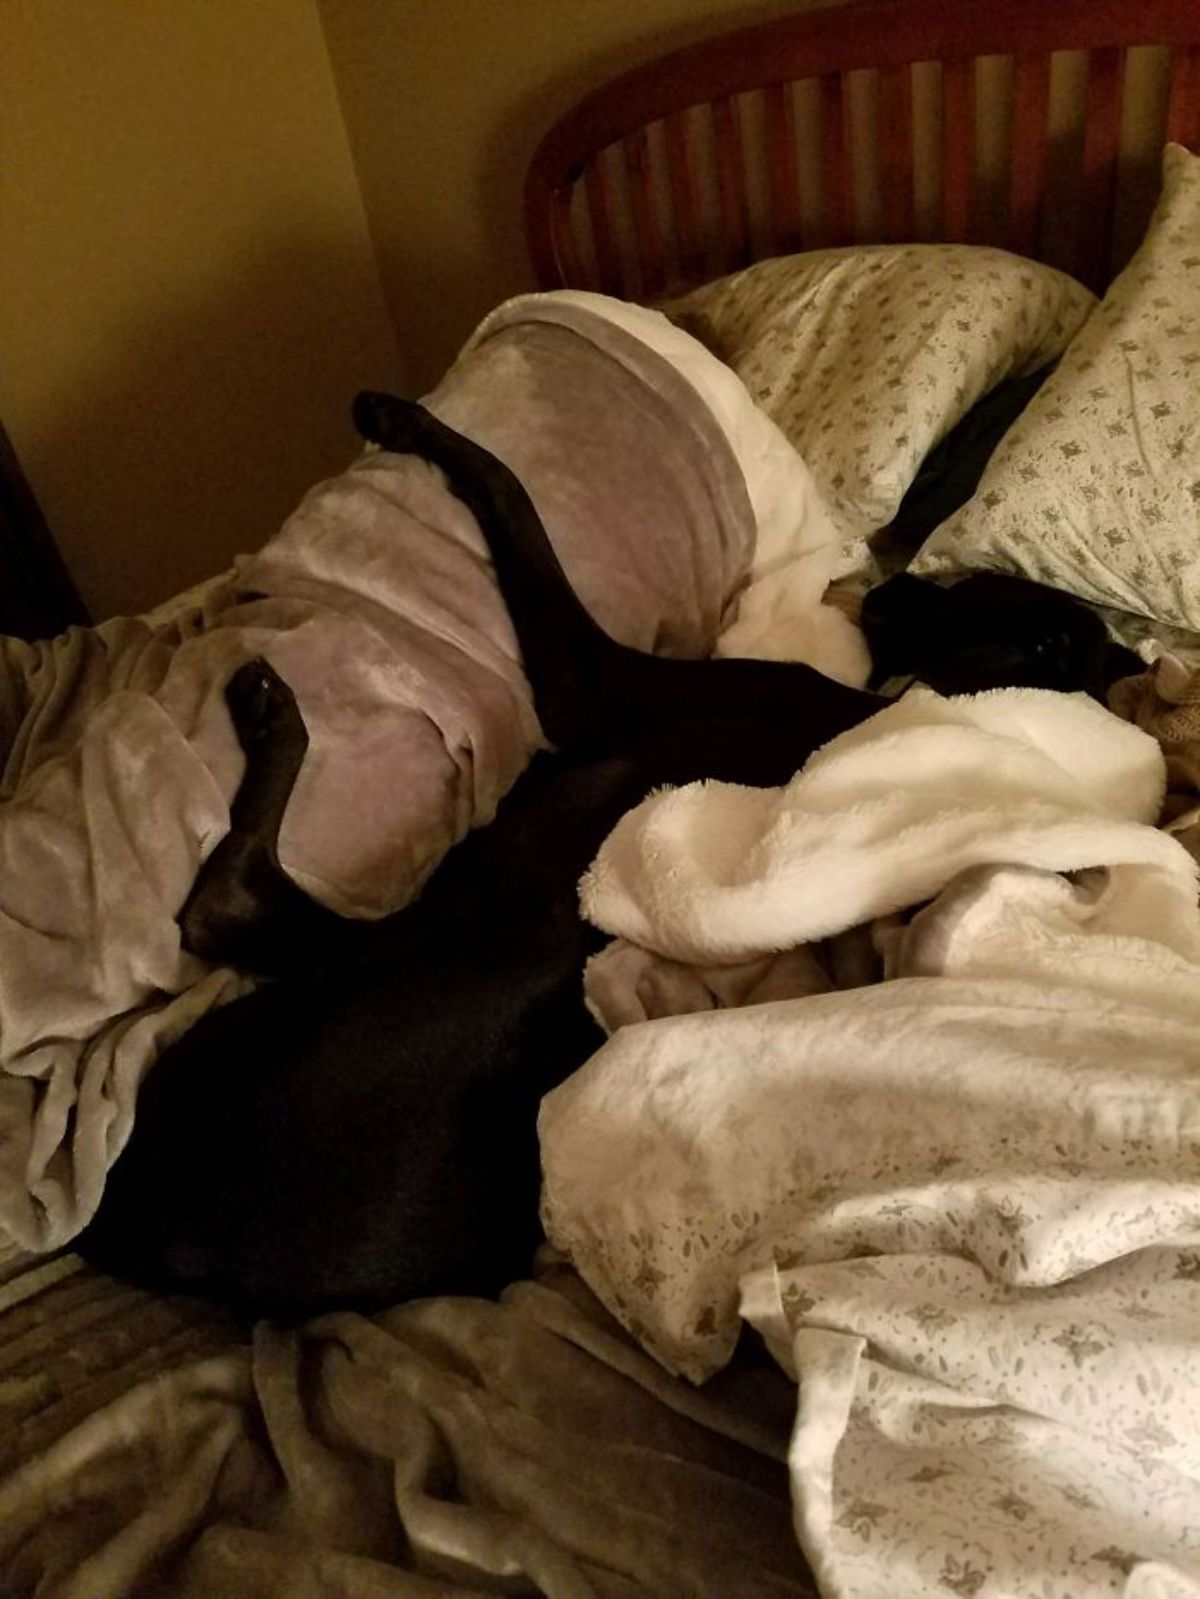 man sleeping under a brown blanket with a black dog cuddling him